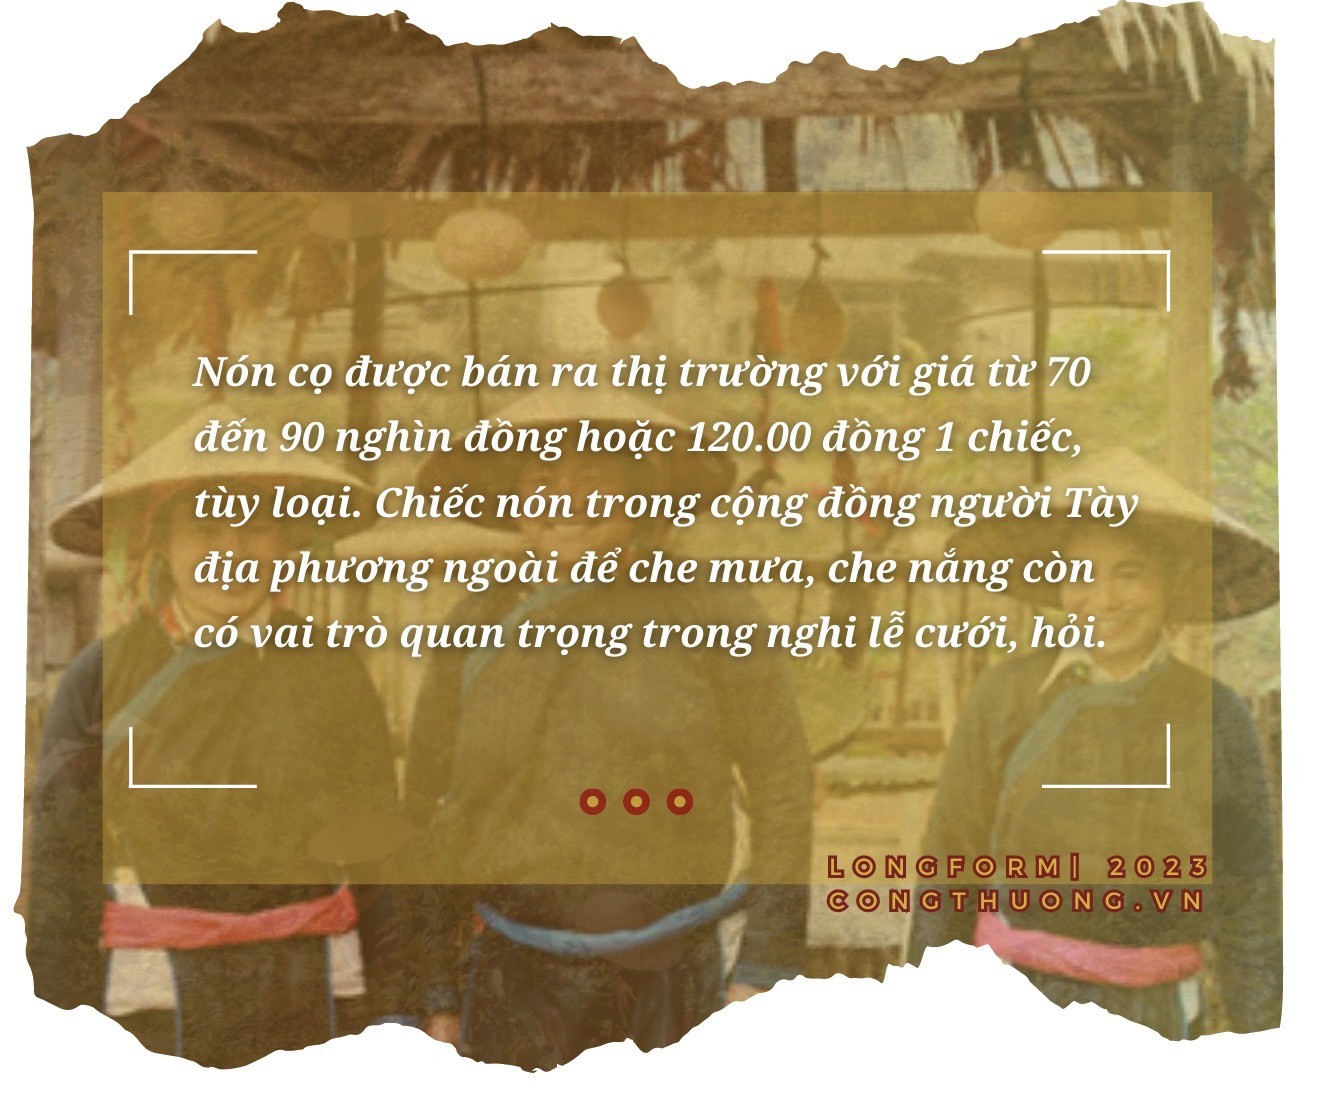 Longform | Phụ nữ Tày miền Bắc Hà- Lào Cai: Giữ nghề xưa, phát triển kinh tế từ vành nón lá cọ